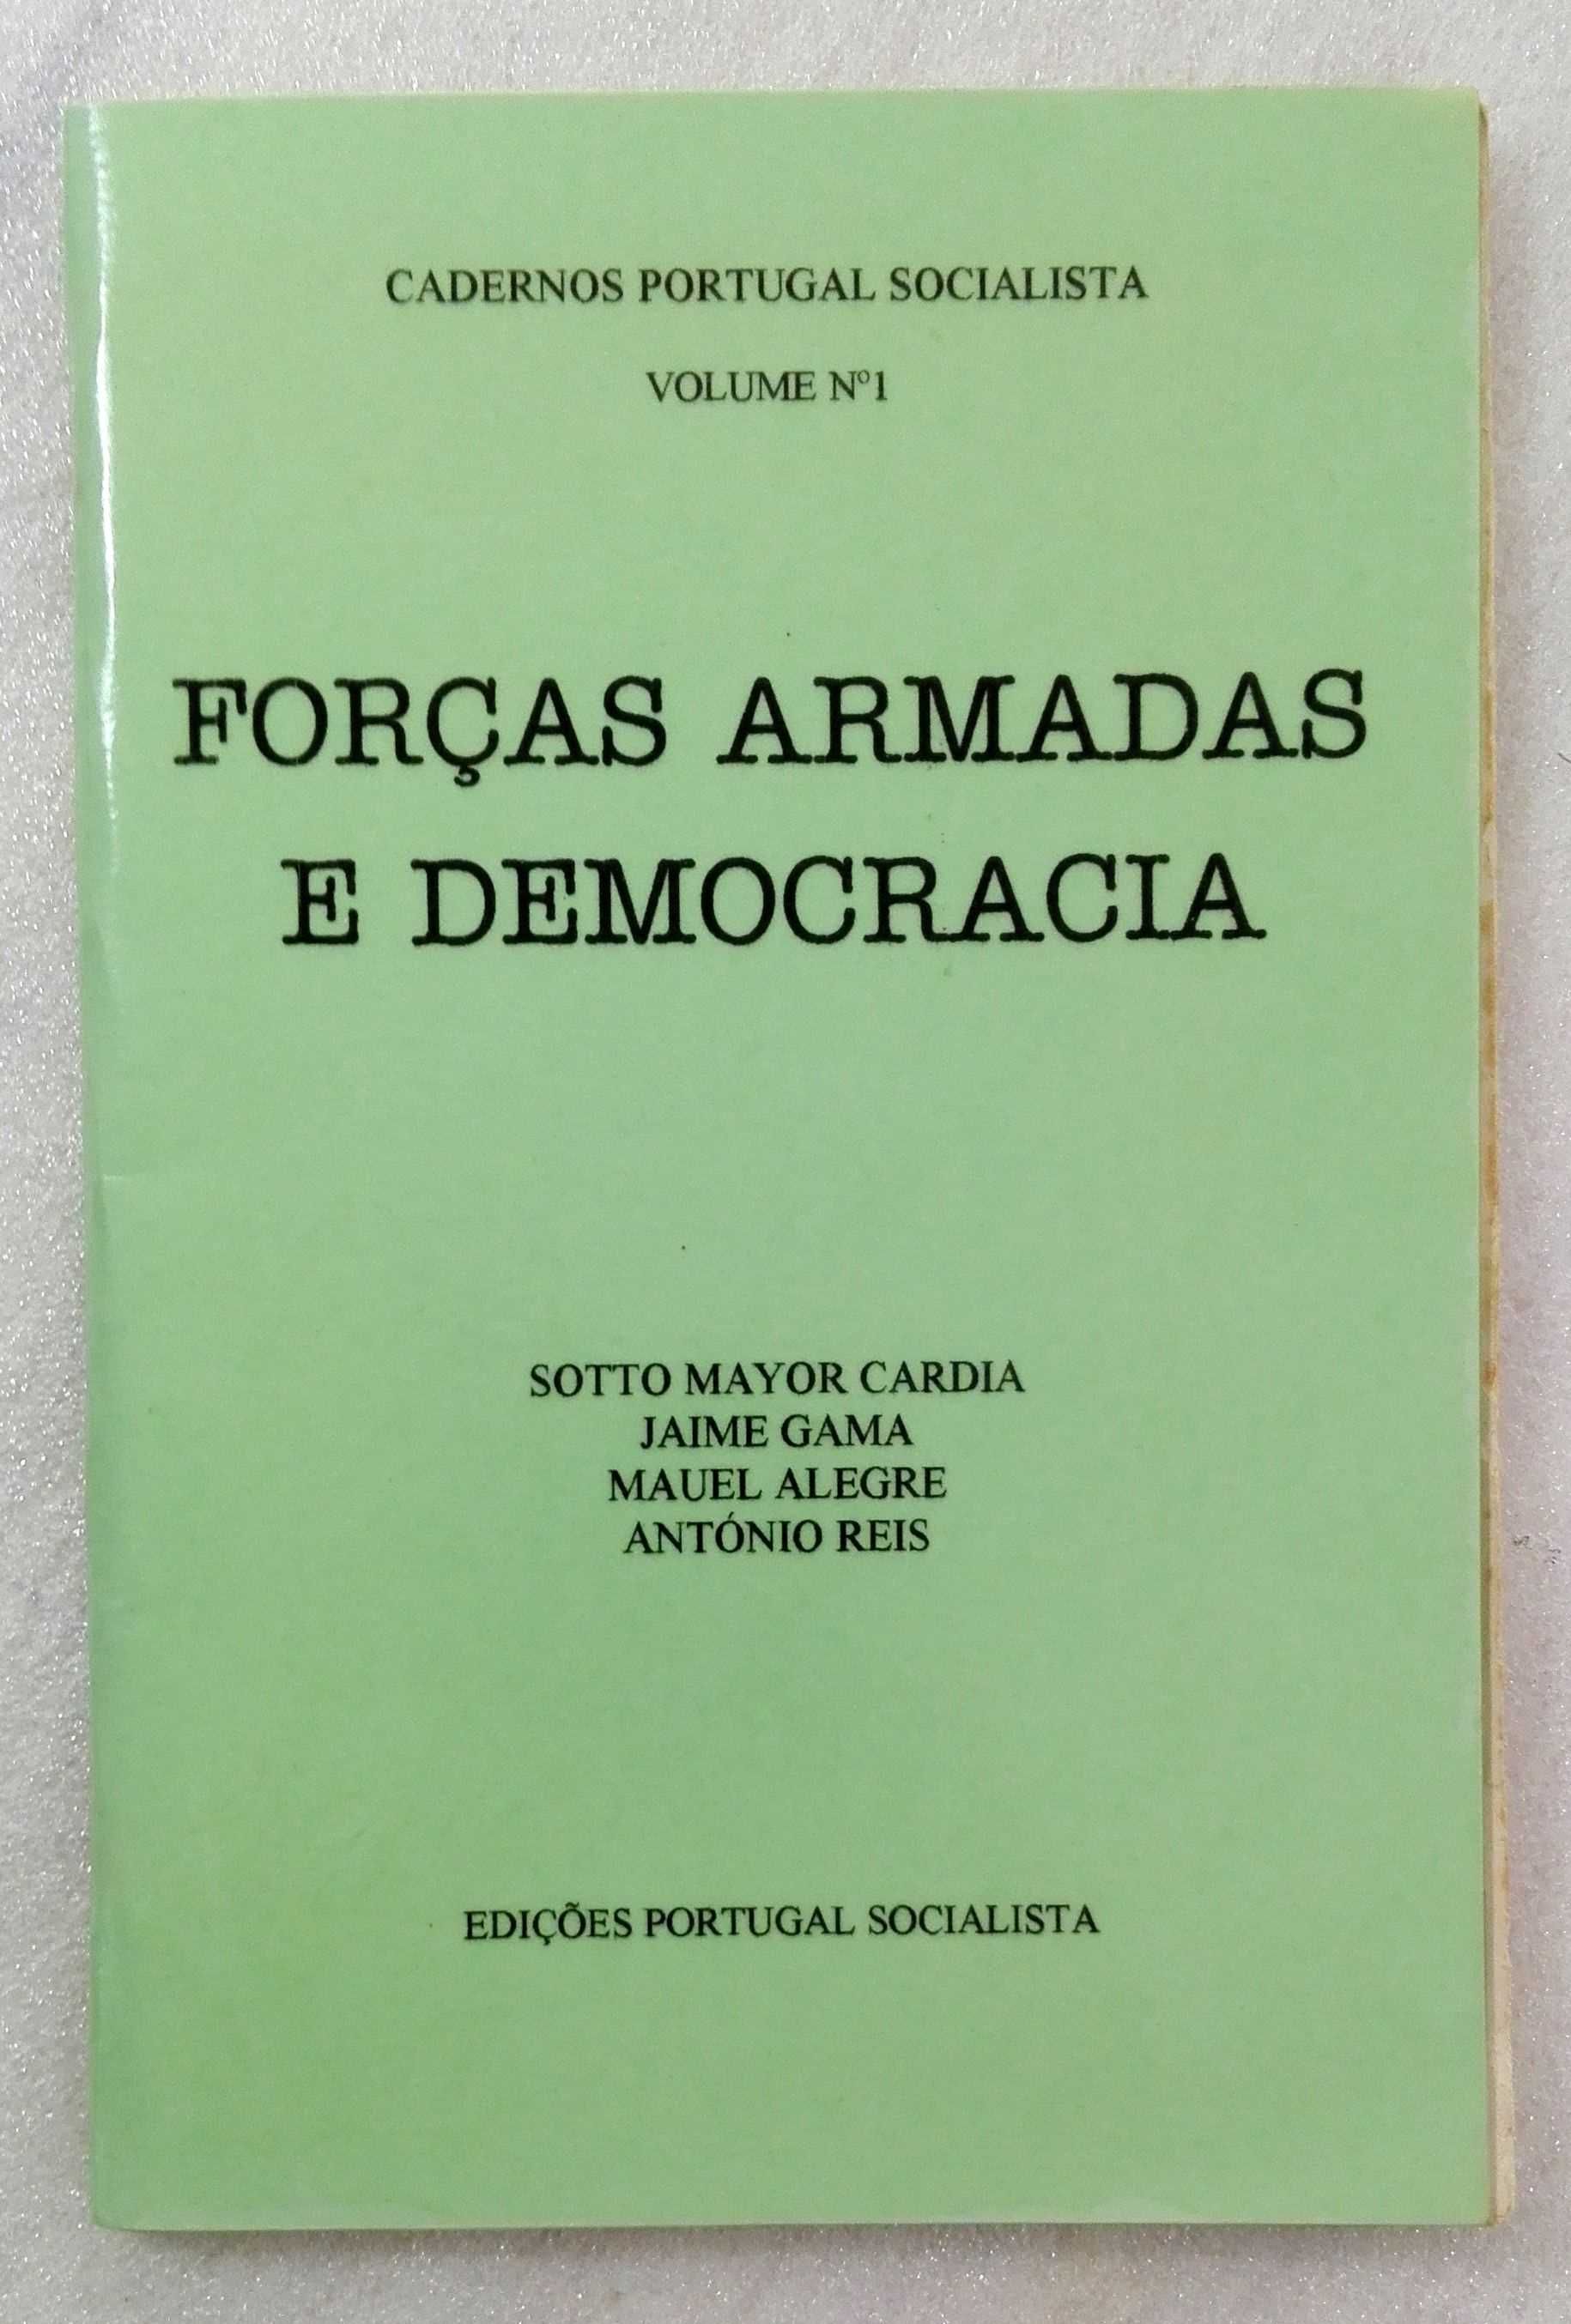 Caderno Forças Armadas e Democracia - Vol. 1